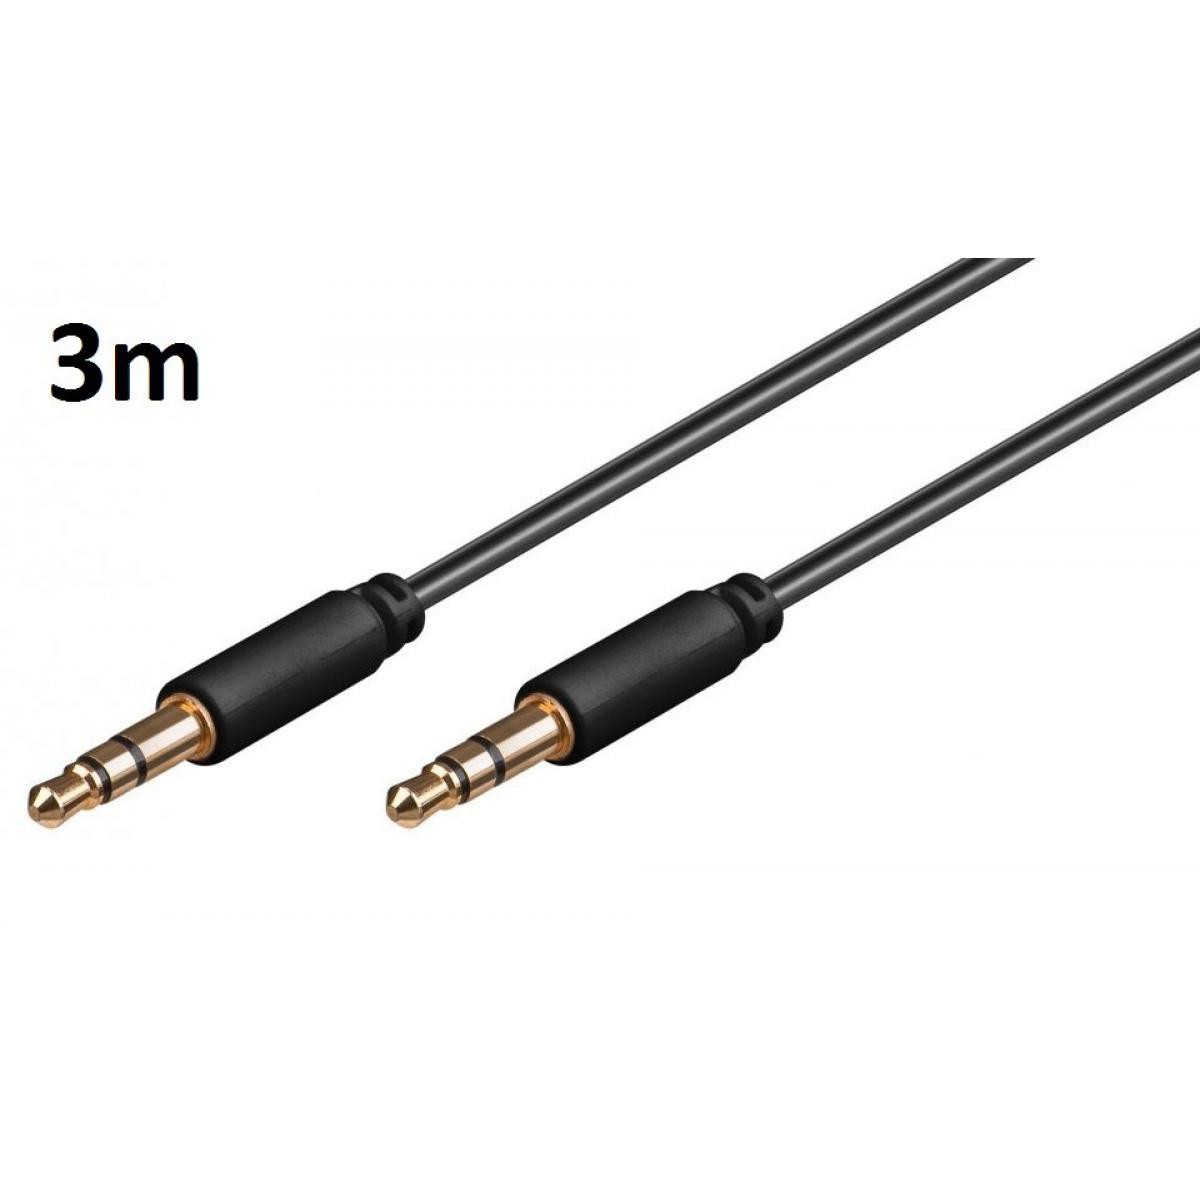 Shot - Cable 3m pour "HUAWEI P40 lite E" Voiture Musique Audio Double Jack Male 3.5 mm NOIR - Câble antenne